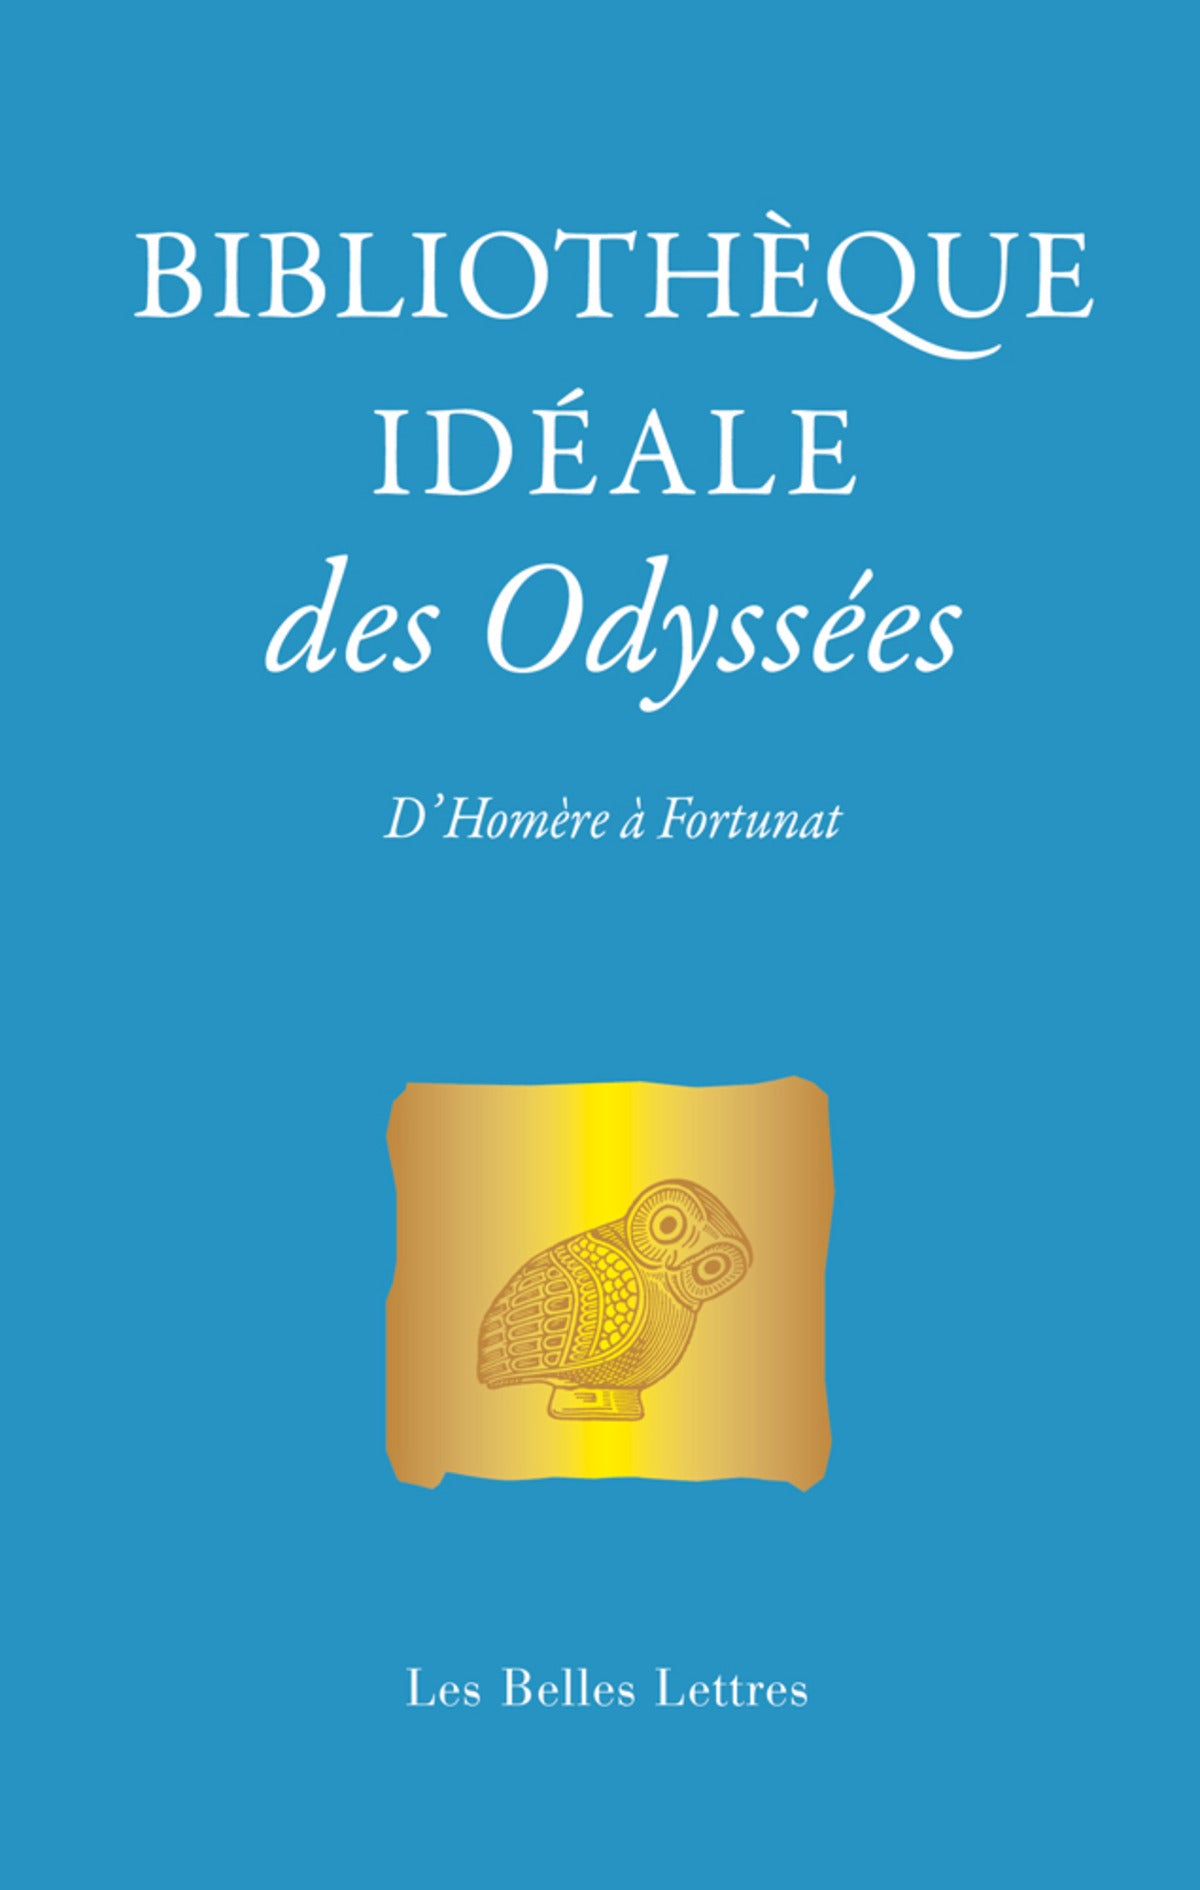 Bibliothèque idéale des Odyssées. D'Homère à Fortunat.